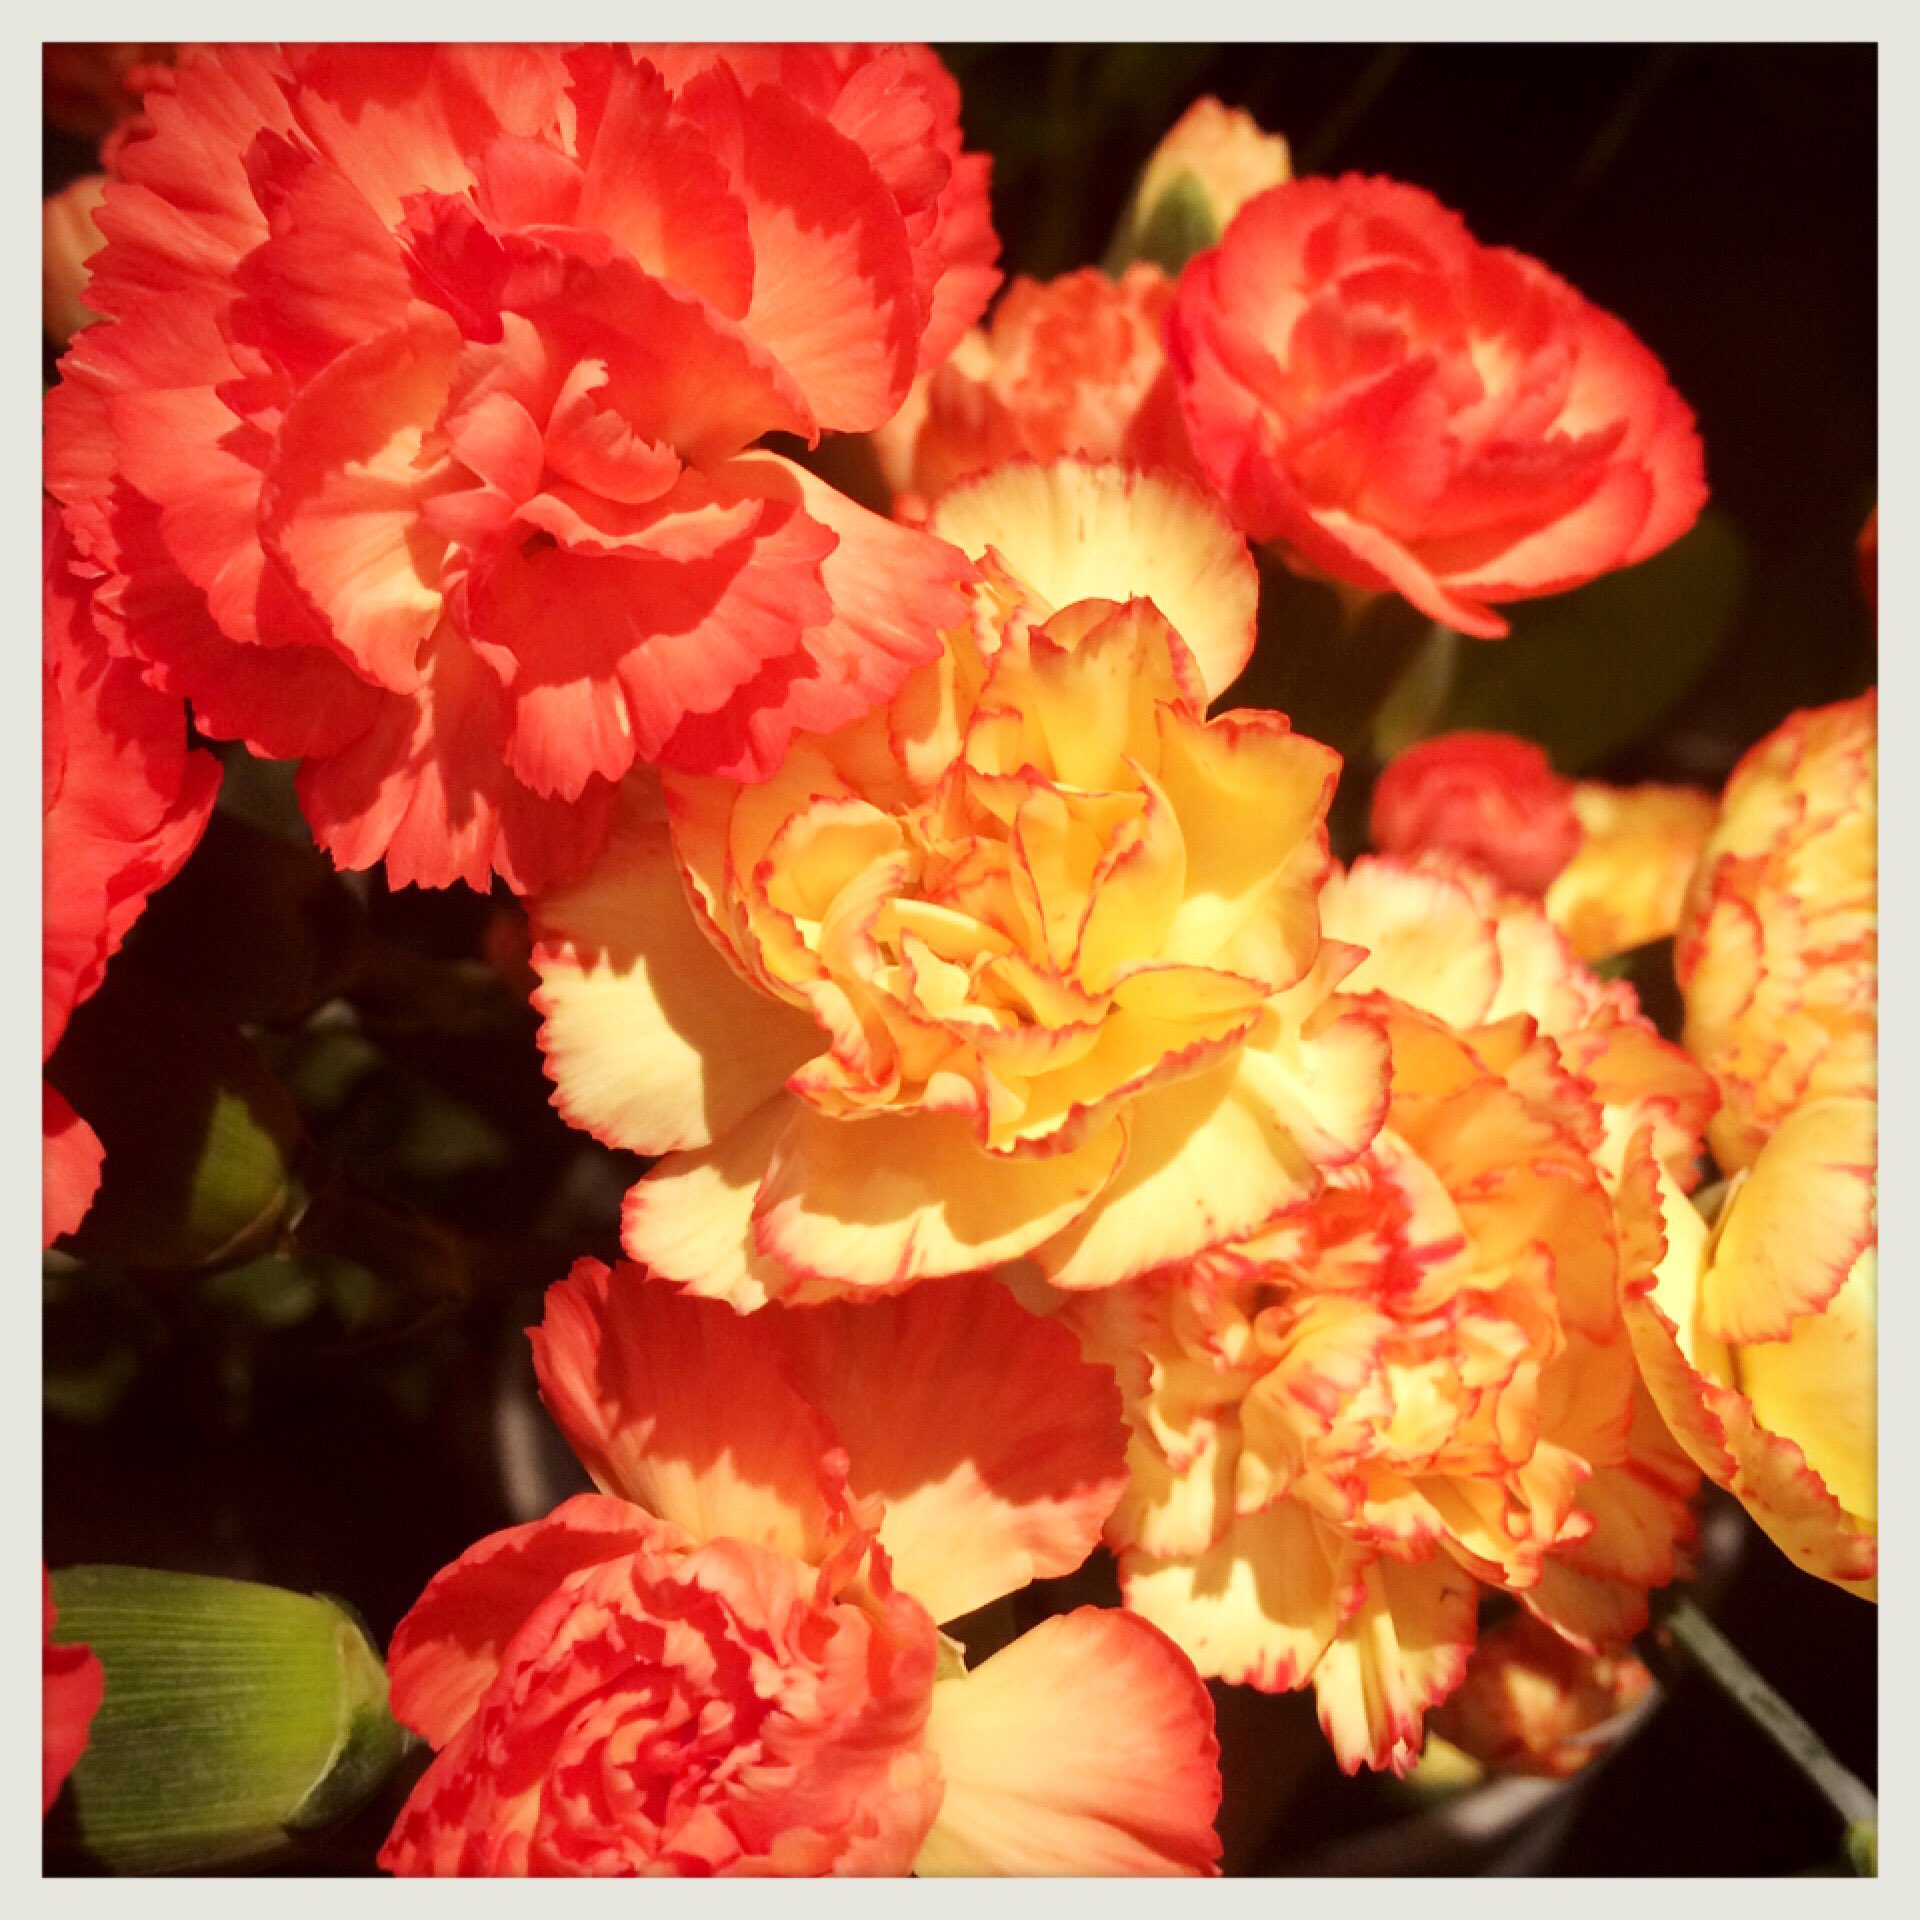 シーズンハーツ A Twitter 本日のお花 スプレーカーネーション 花言葉 無垢で深い愛 スプレー とゆうのは1本にお花が数輪付いているもので 小さなカーネーションがブーケやアレンジメントをとても可愛らしく演出してくれます 母の日に贈る赤の カーネーションの花